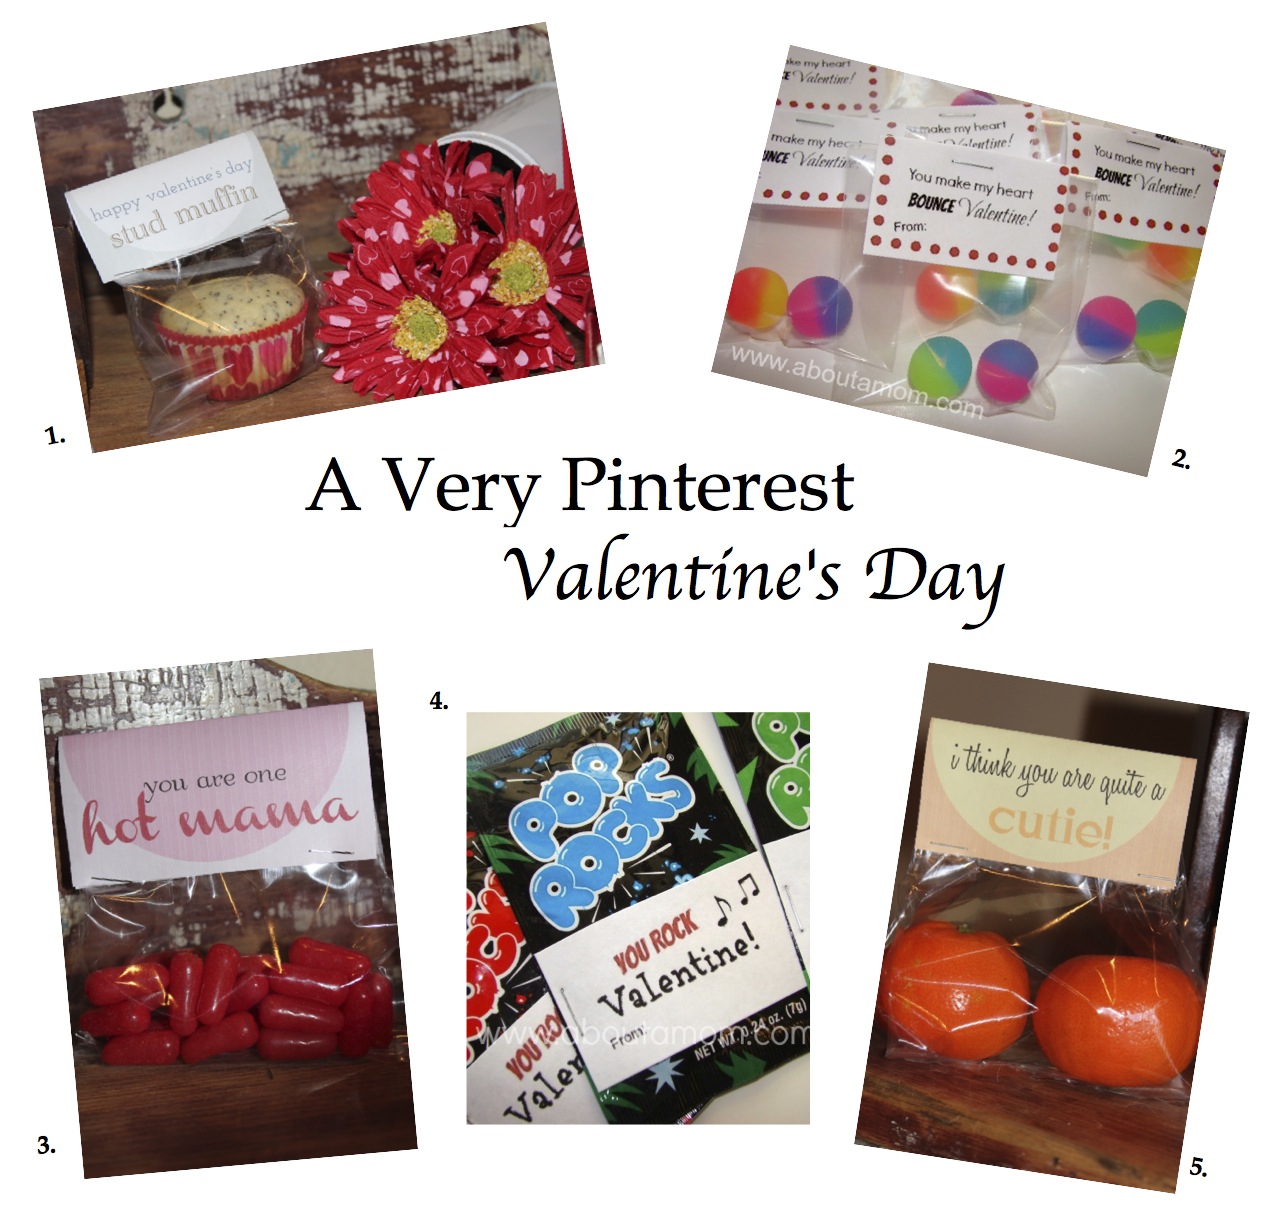 Monday Morning Motivation: A Very Pinterest Valentine’s Day